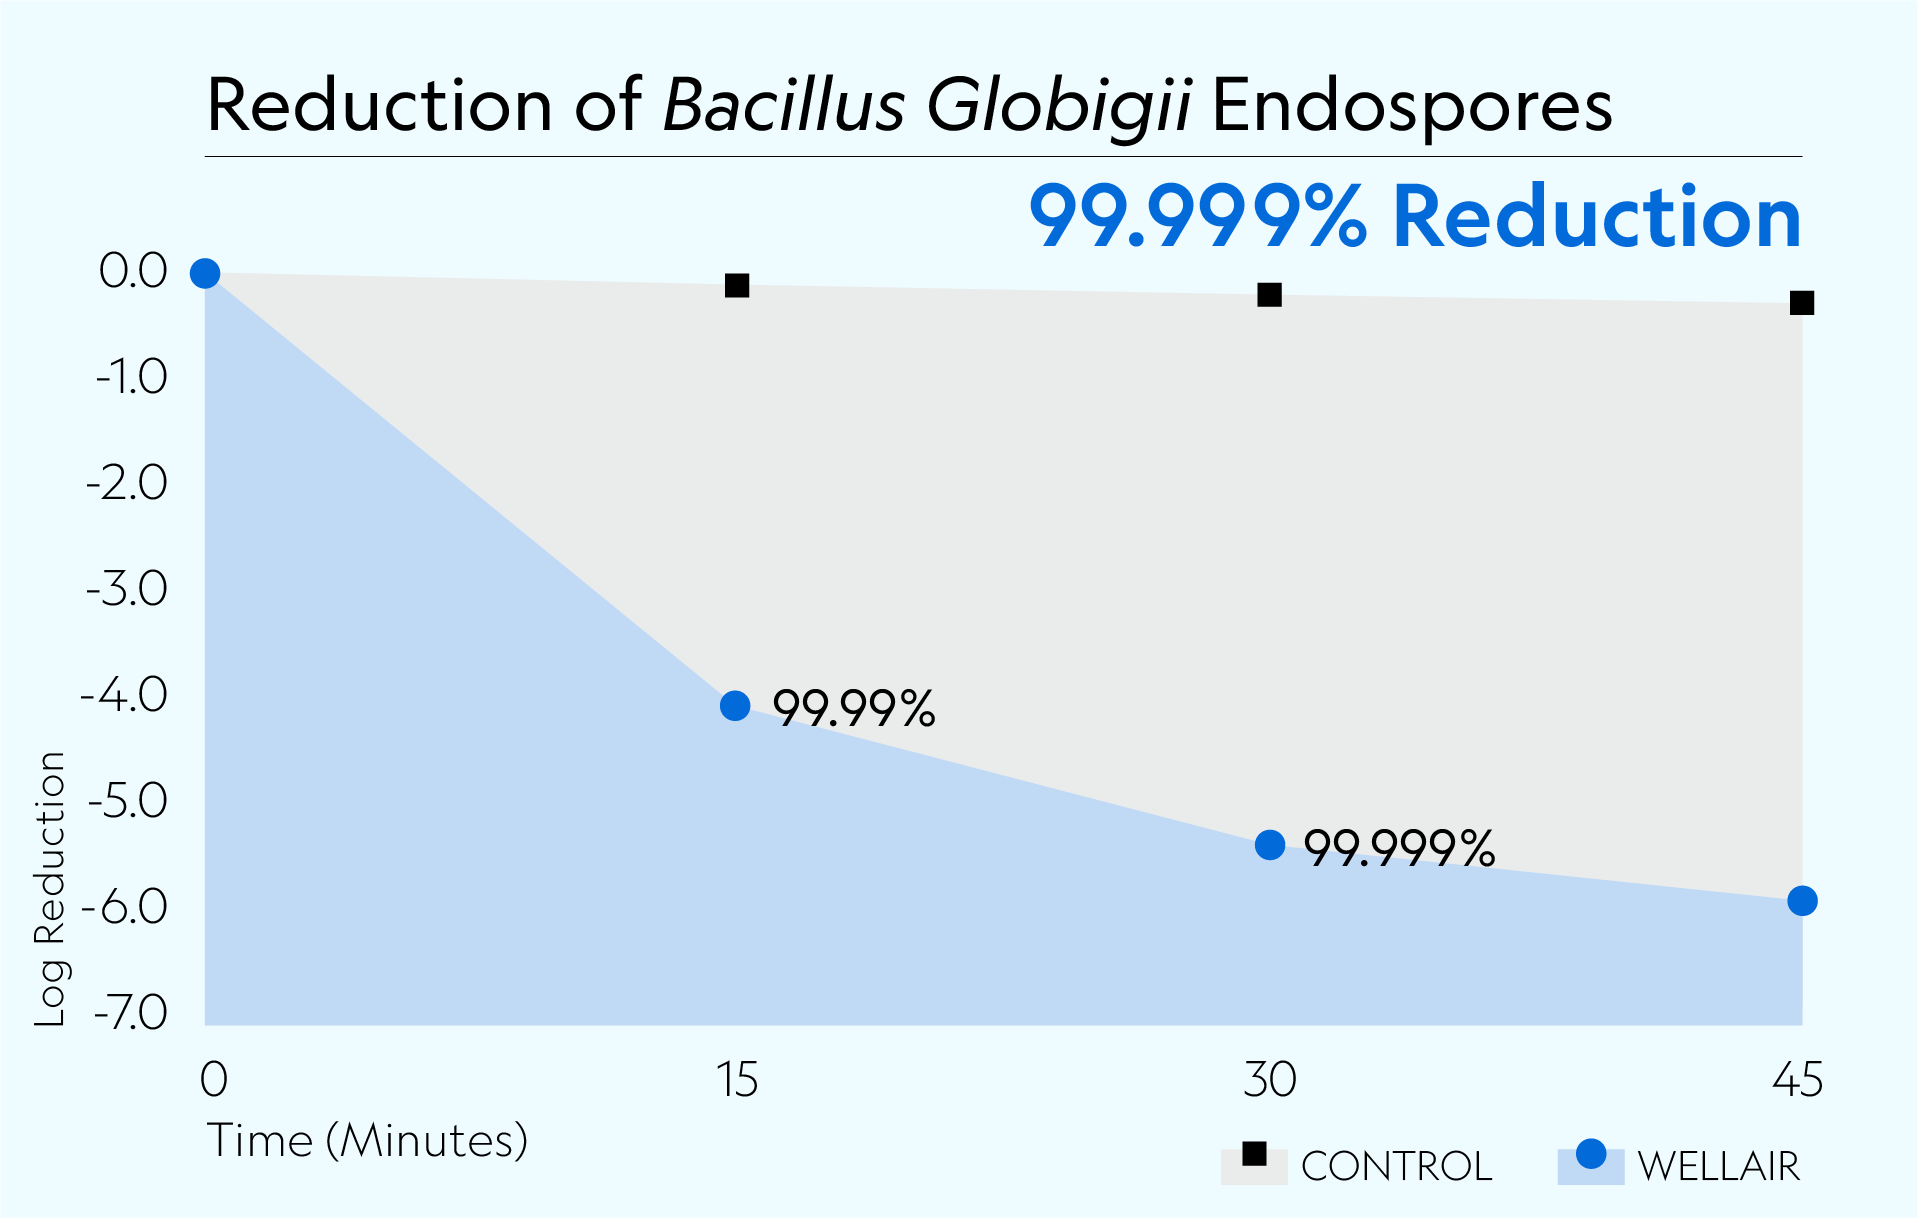 Defend 1050 achieved 99.999% reduction of Bacillus Globigii Endospores